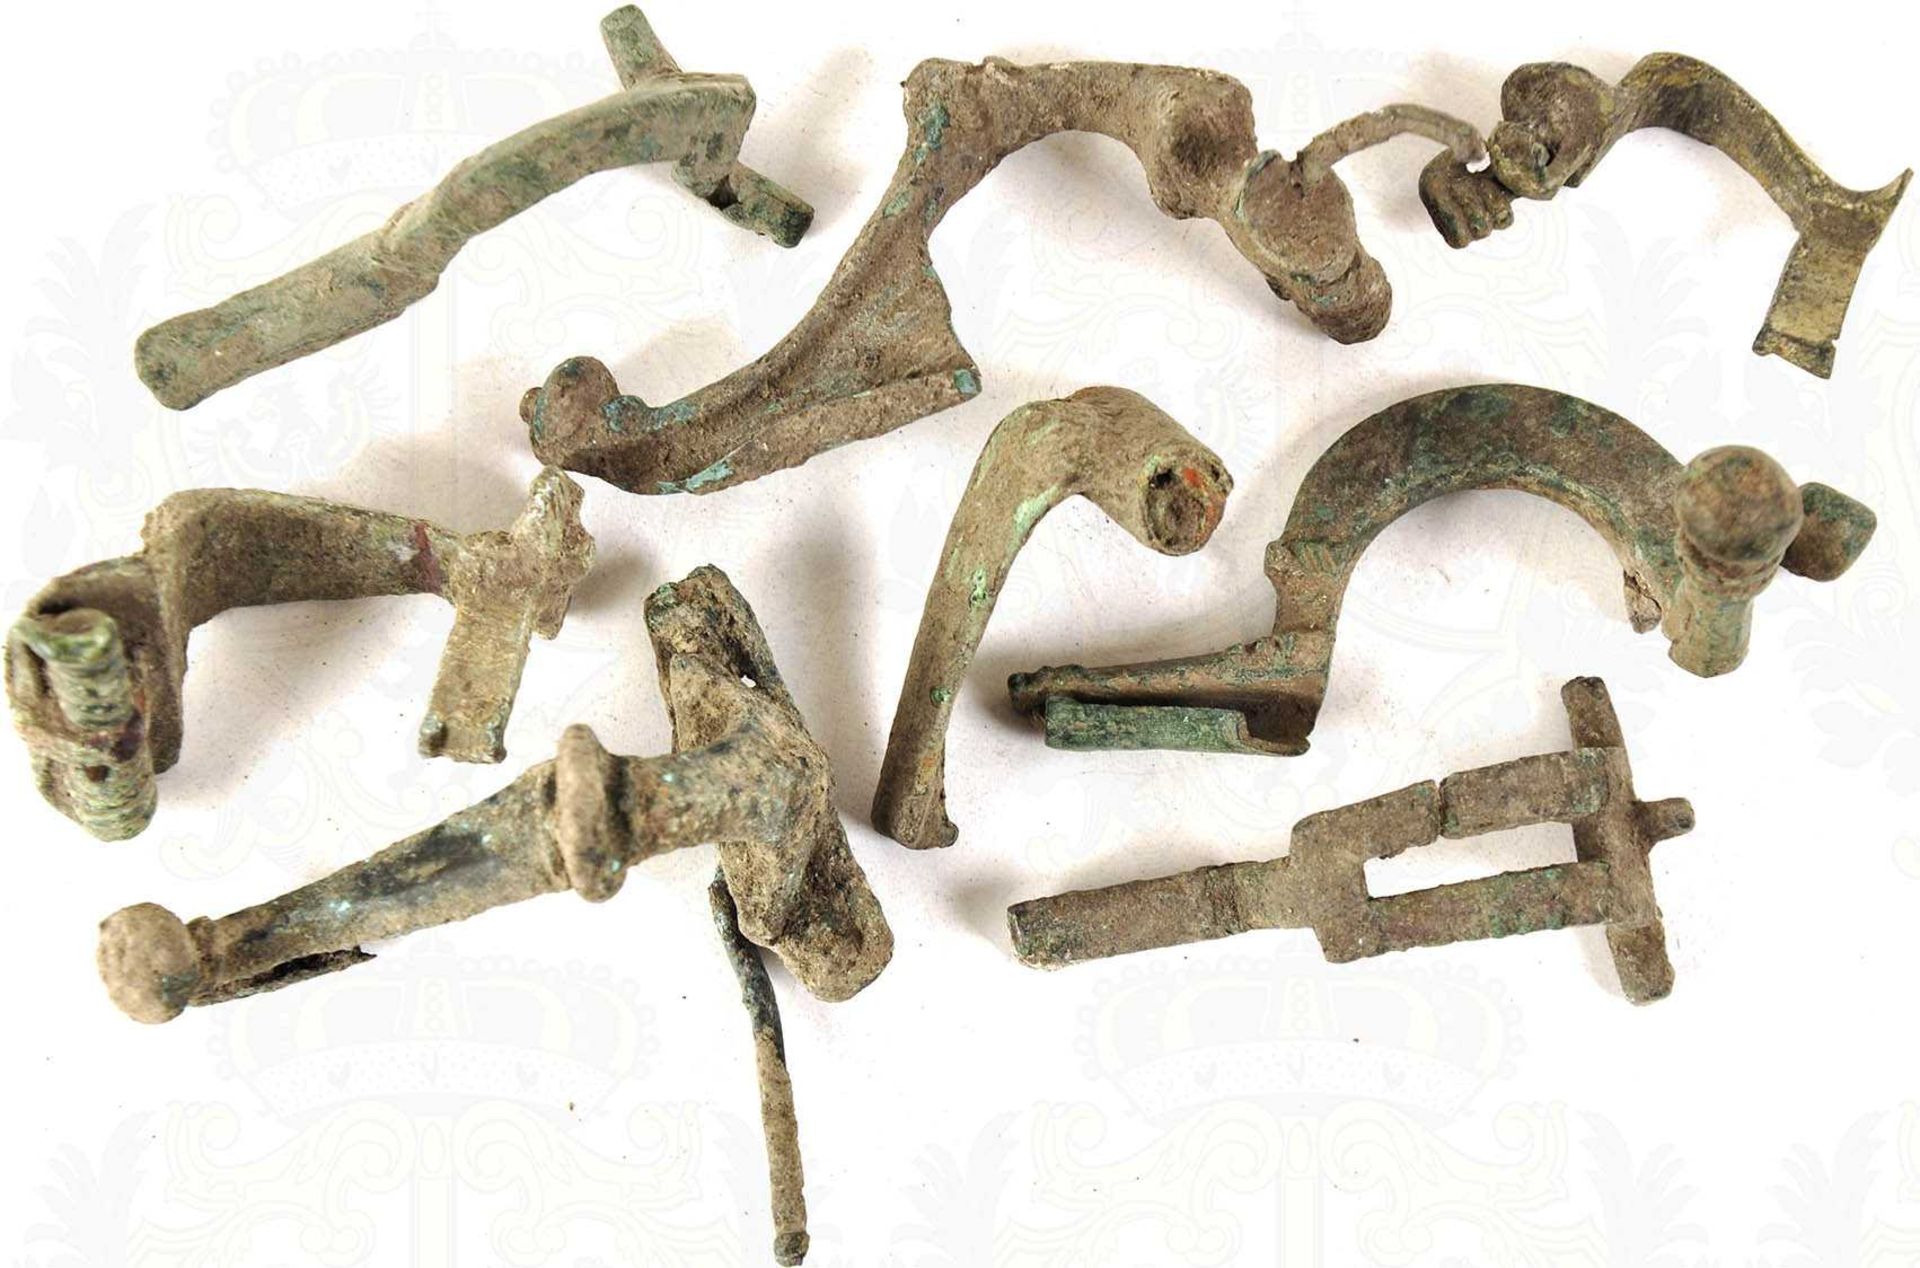 8 FIBELN, versch. Ausführungen u. Grössen (35-75 mm), Bronze, grüne Patina, tls. unkpl./beschädigt <